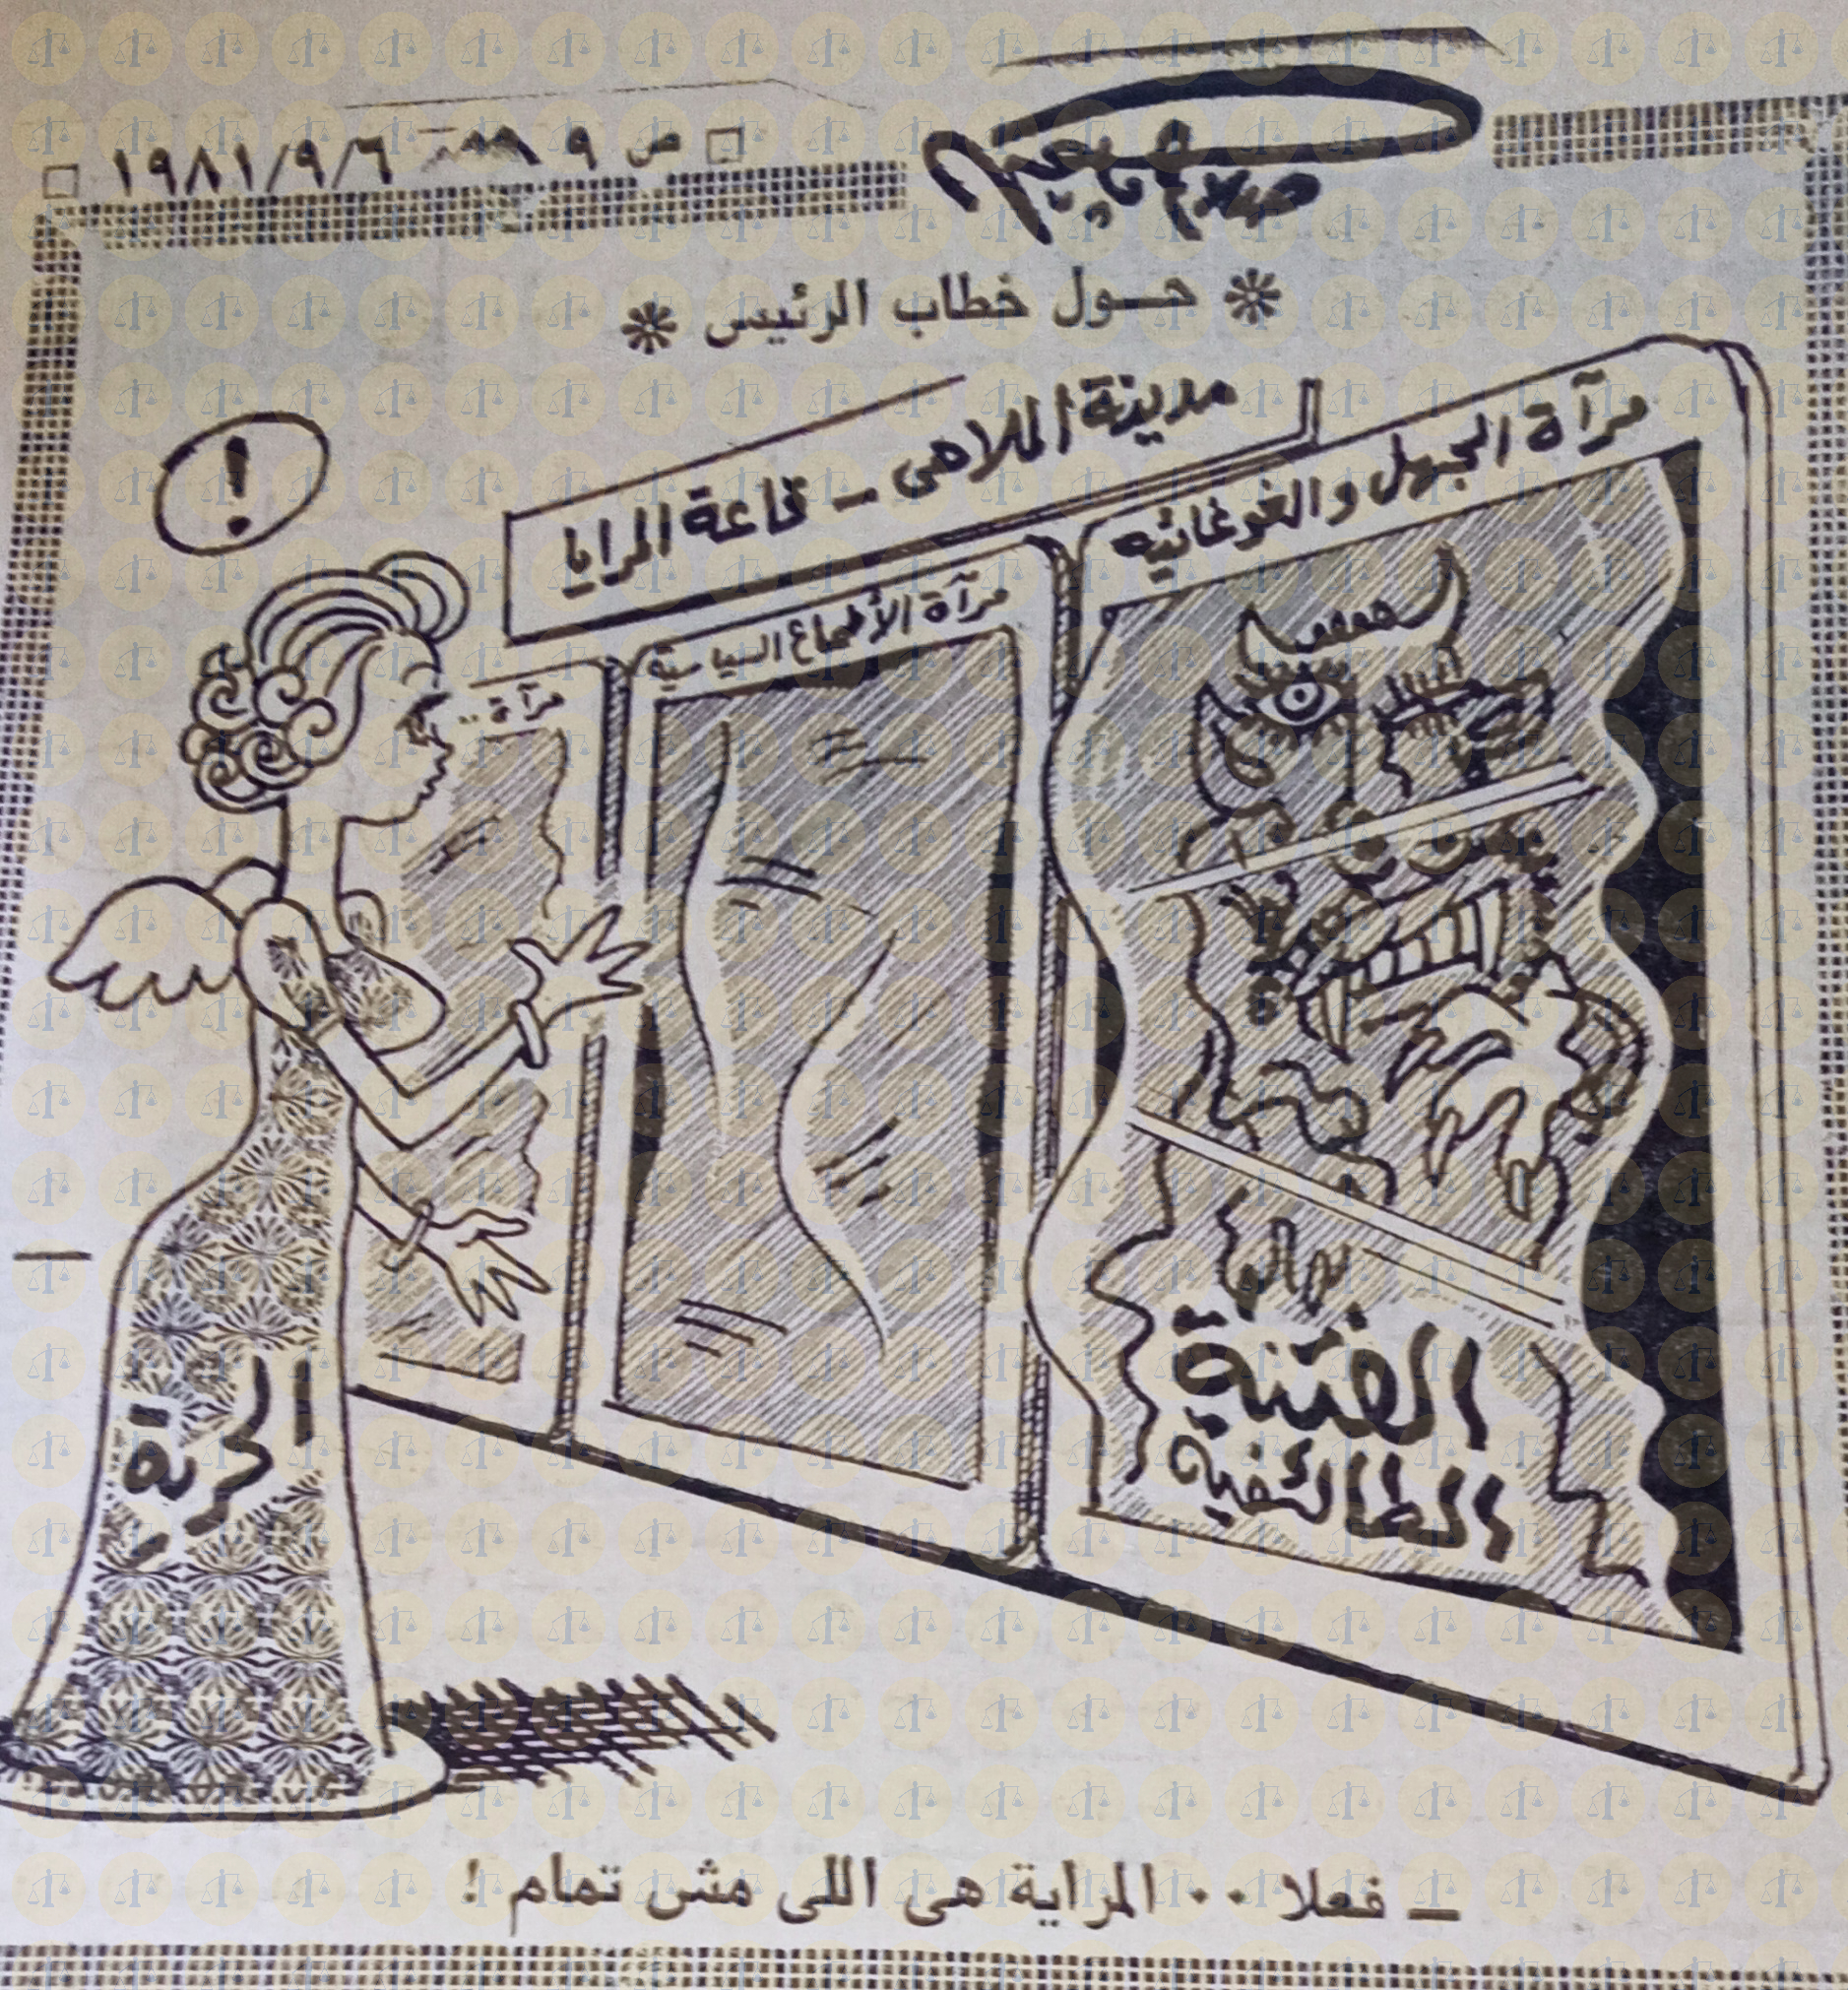 كاريكاتير صلاح جاهين يوم 6 سبتمبر 1981